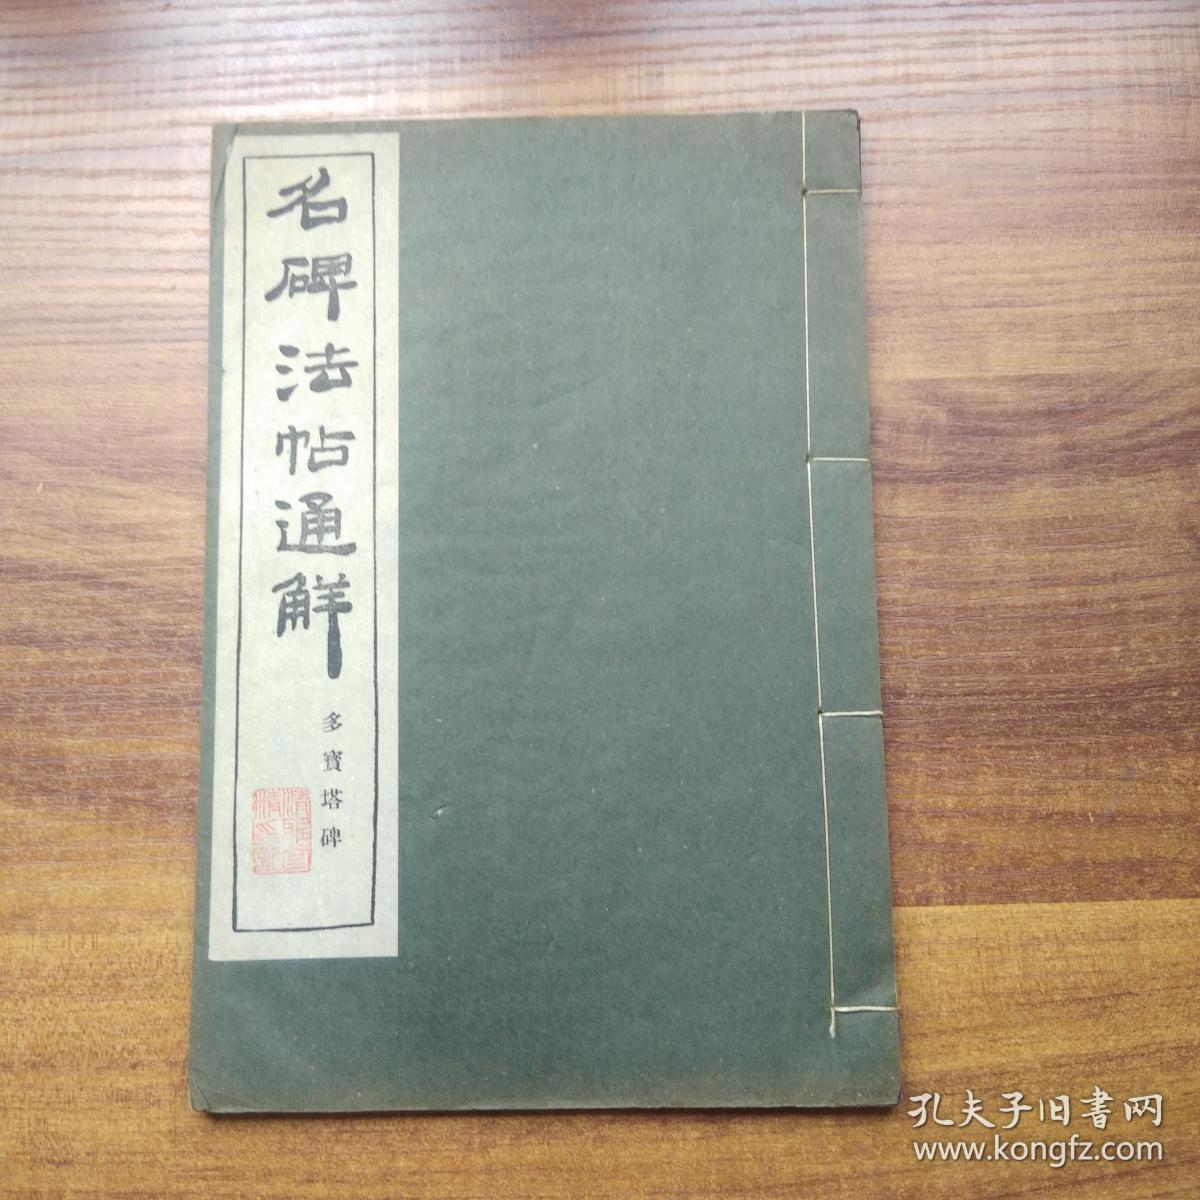 线装古籍     和本《名碑法帖通解 多宝塔碑》      清雅堂发行   昭和32年（1957年）